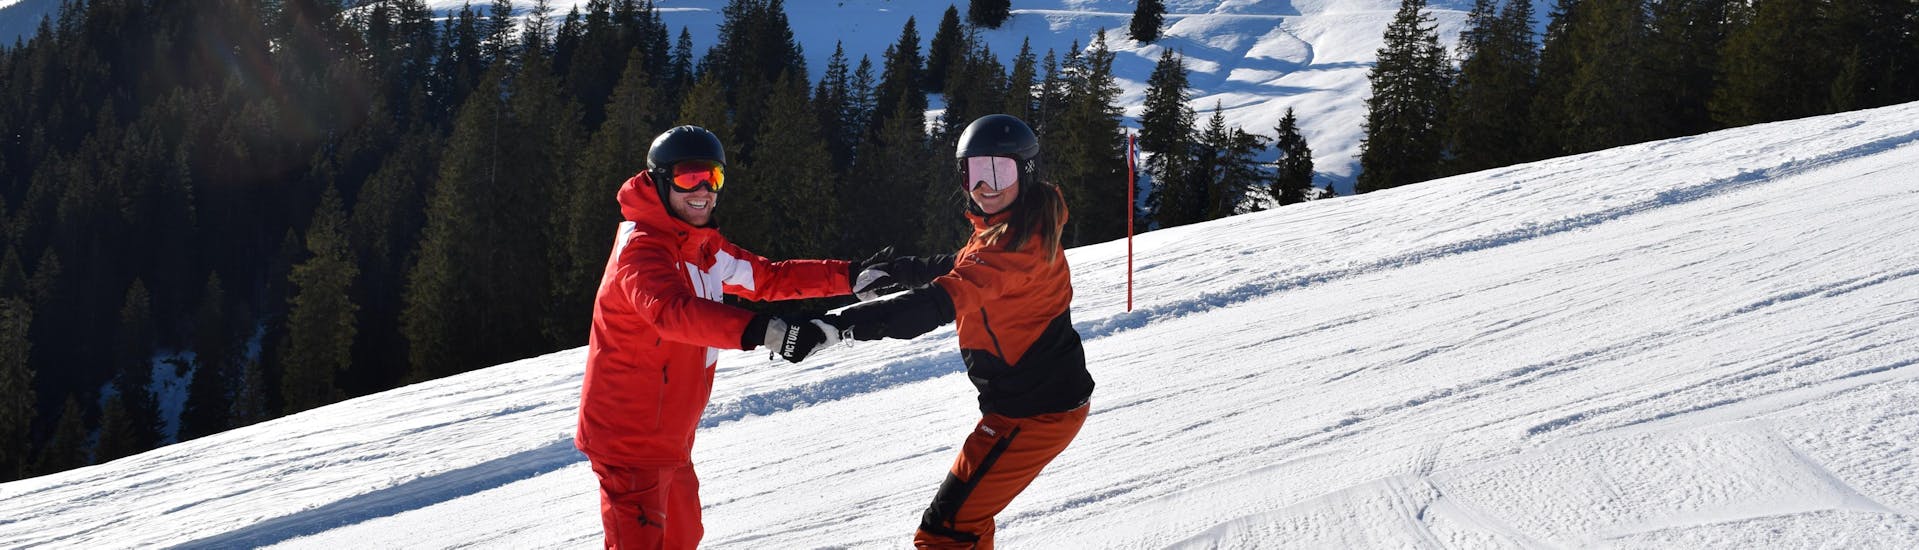 Clases de snowboard privadas a partir de 5 años para todos los niveles con Ski School Snowsports Westendorf.